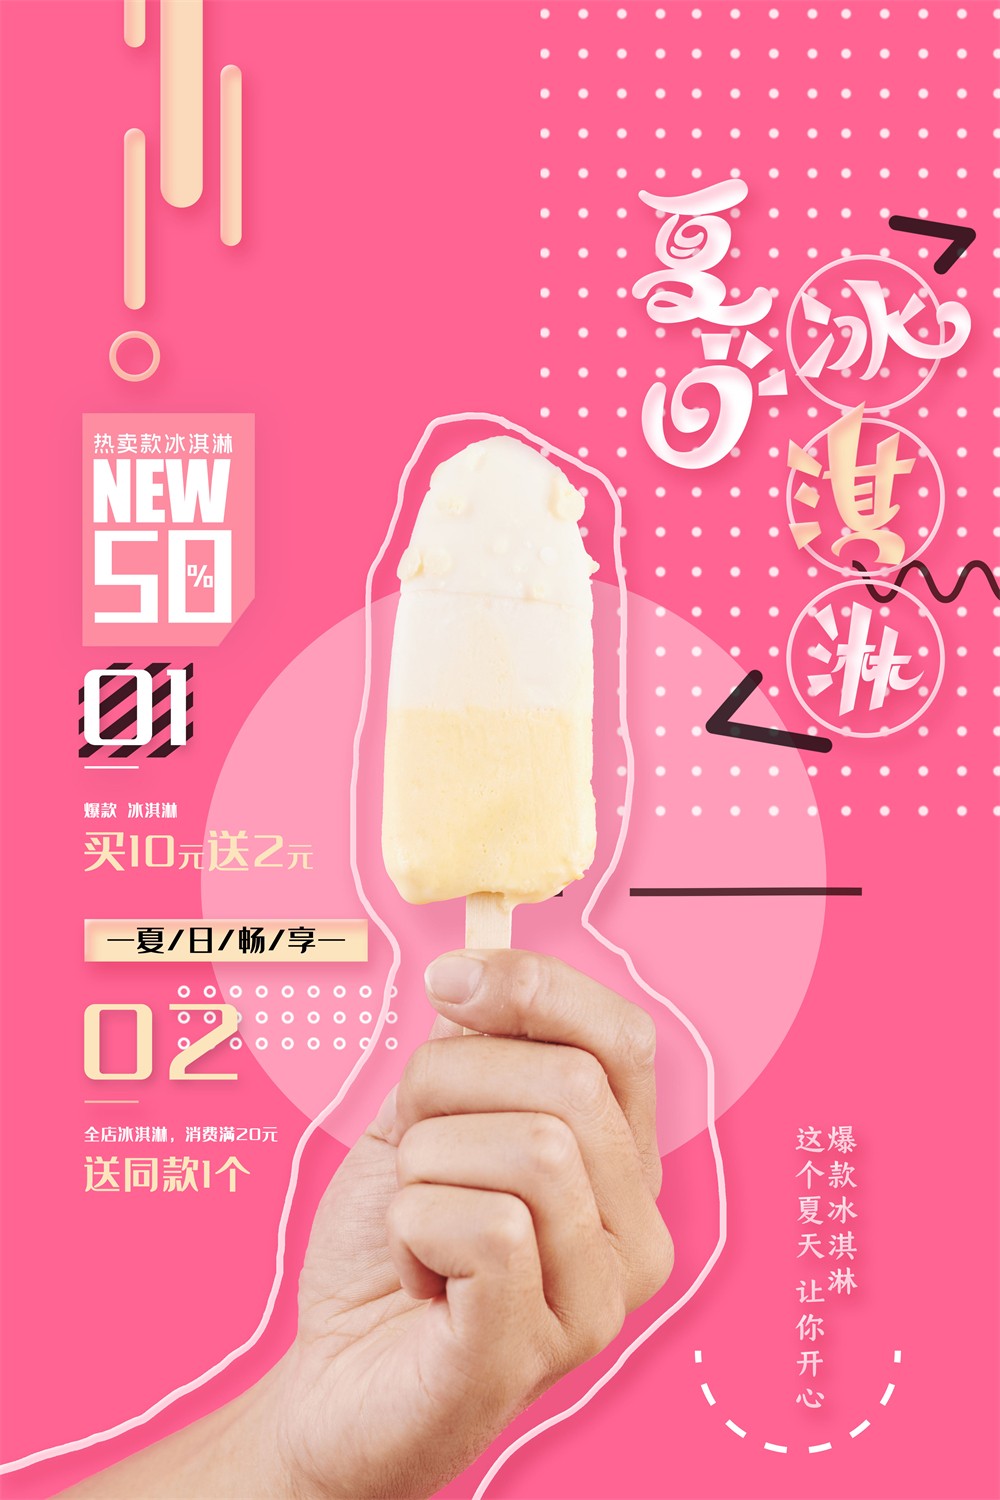 夏日热卖冰淇淋促销活动宣传海报